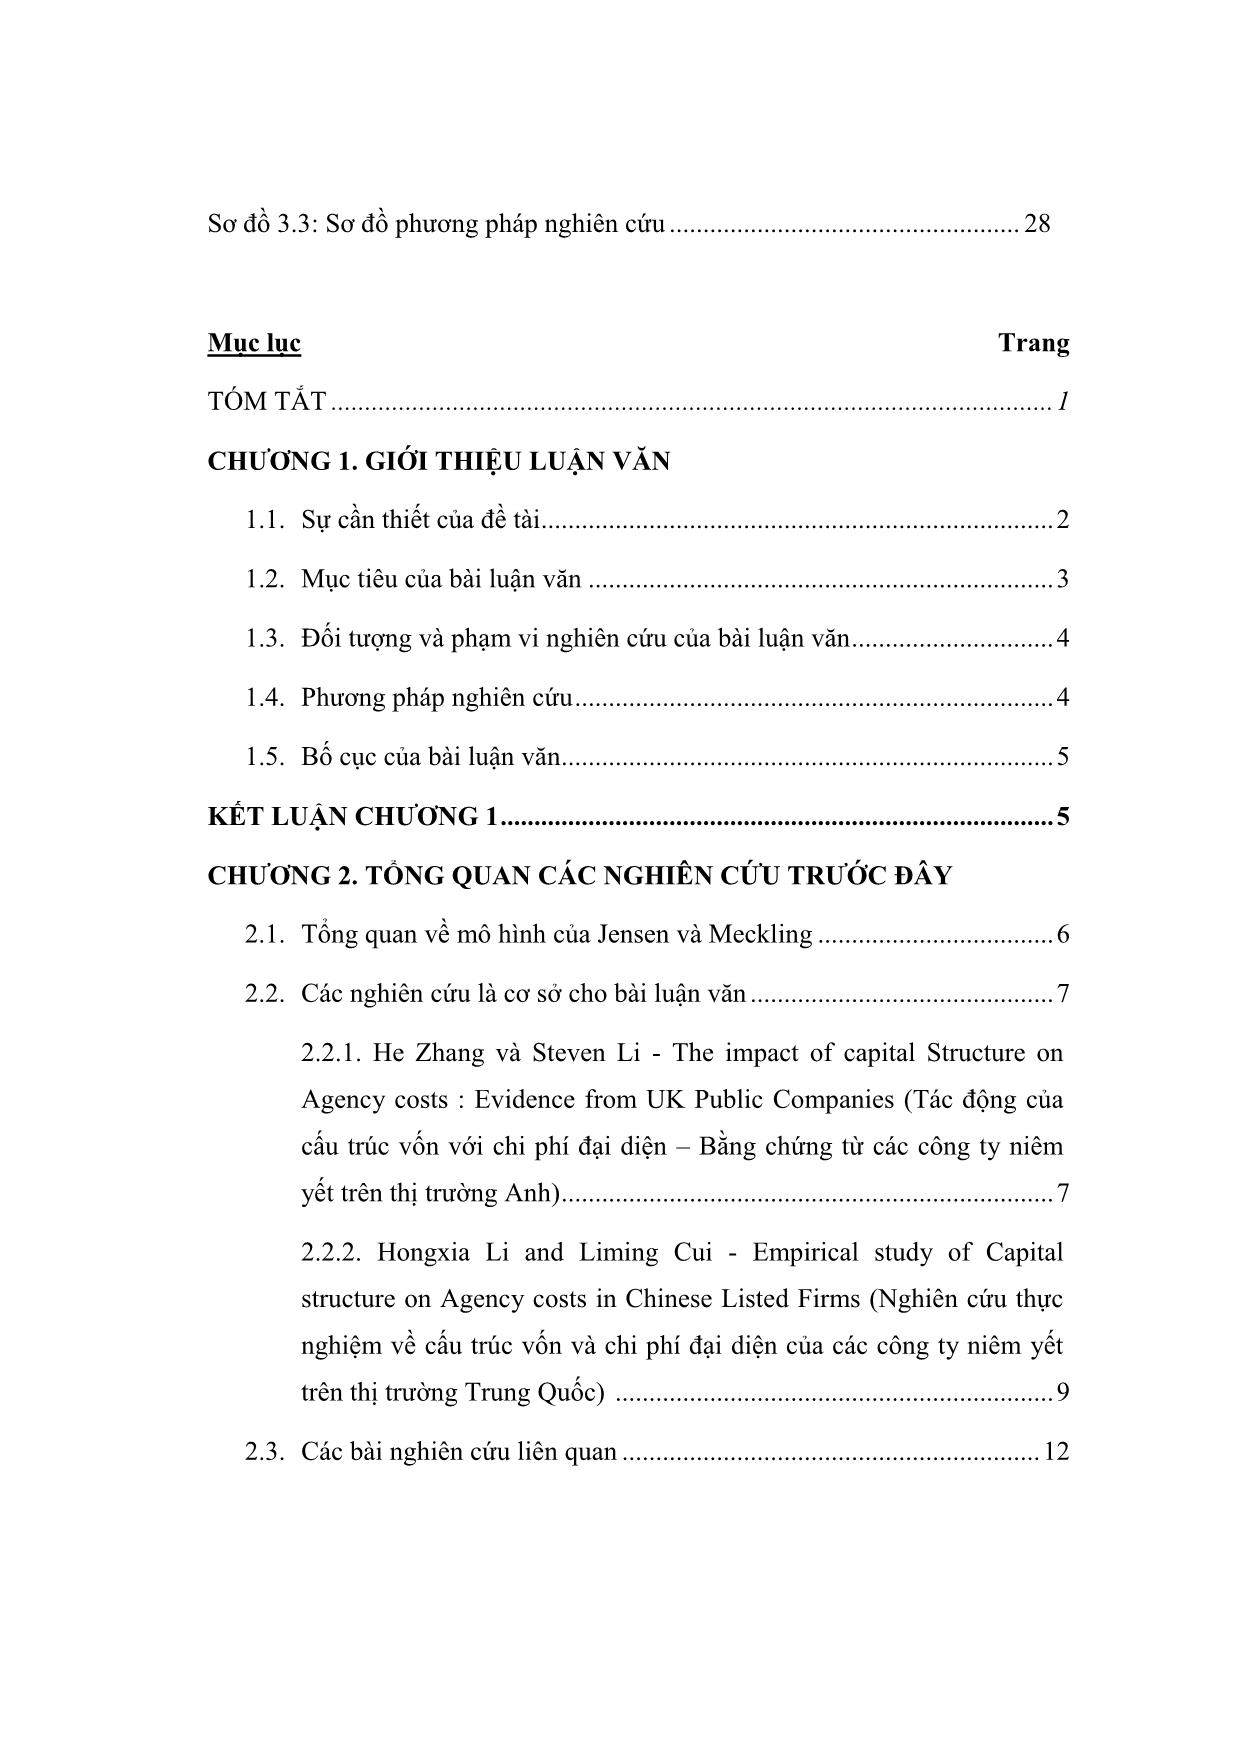 Luận văn Cấu trúc vốn và chi phí đại diện của các công ty cổ phần tại Việt Nam trang 7